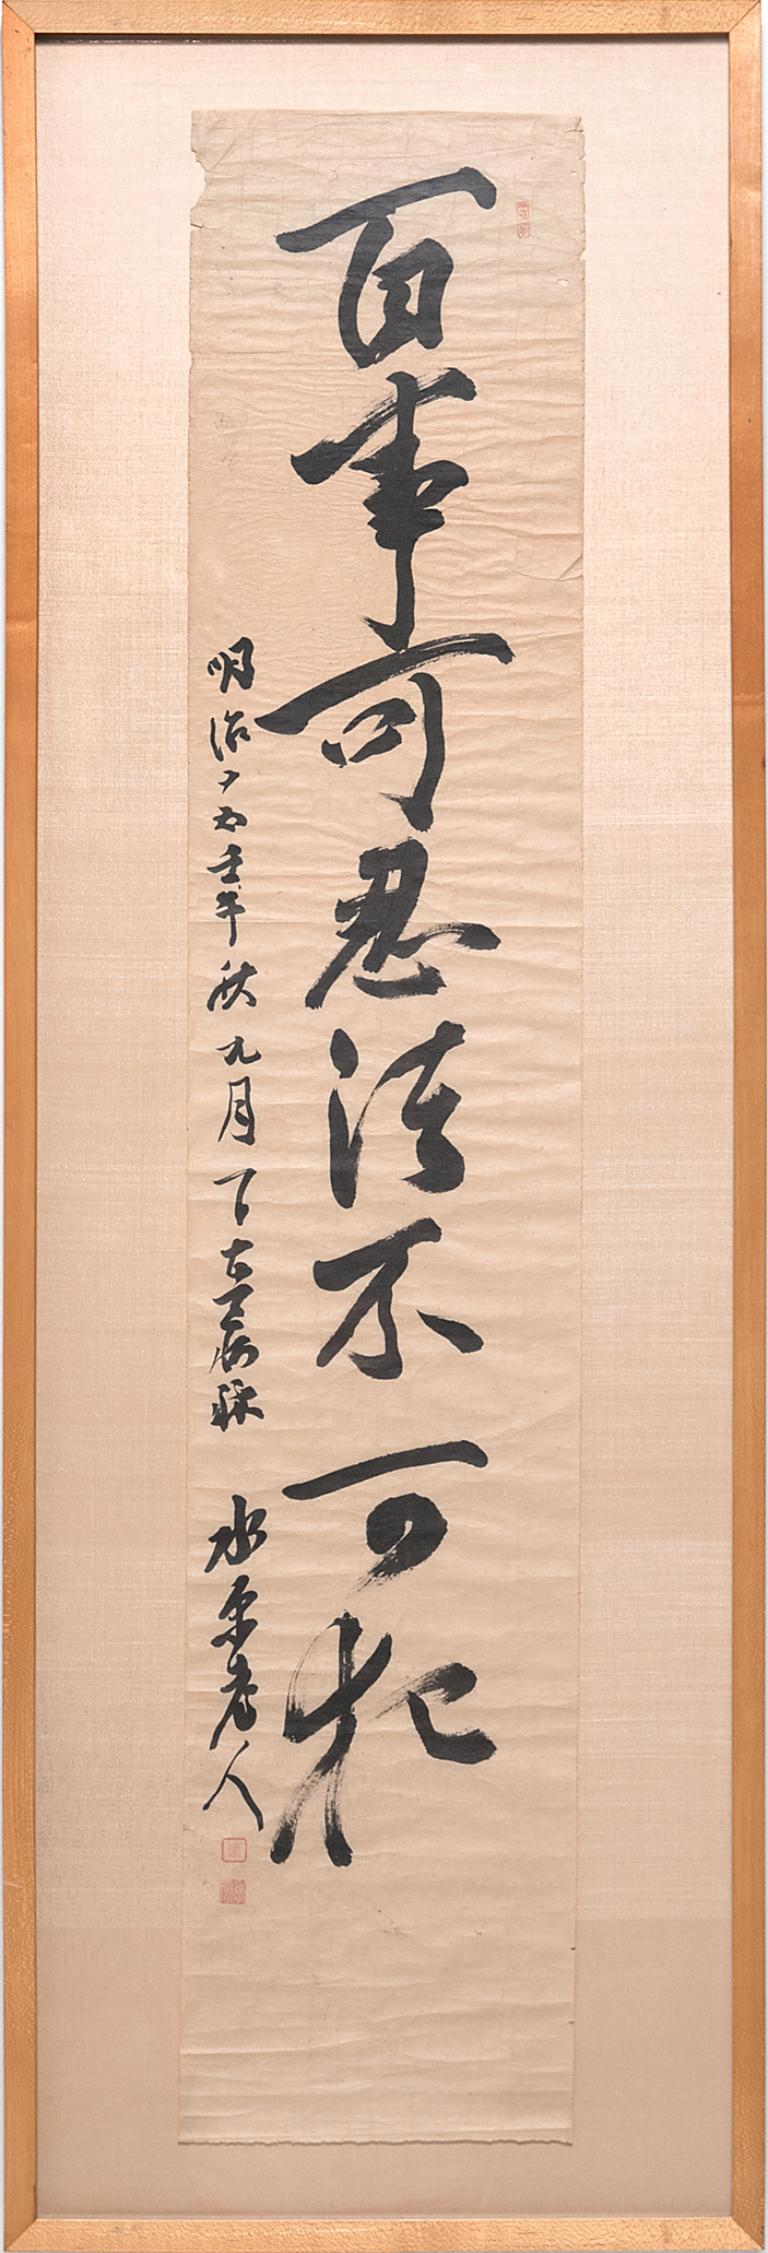 Unknown Abstract Drawing – Chinesische Kalligraphie-Schnörkel, um 1920